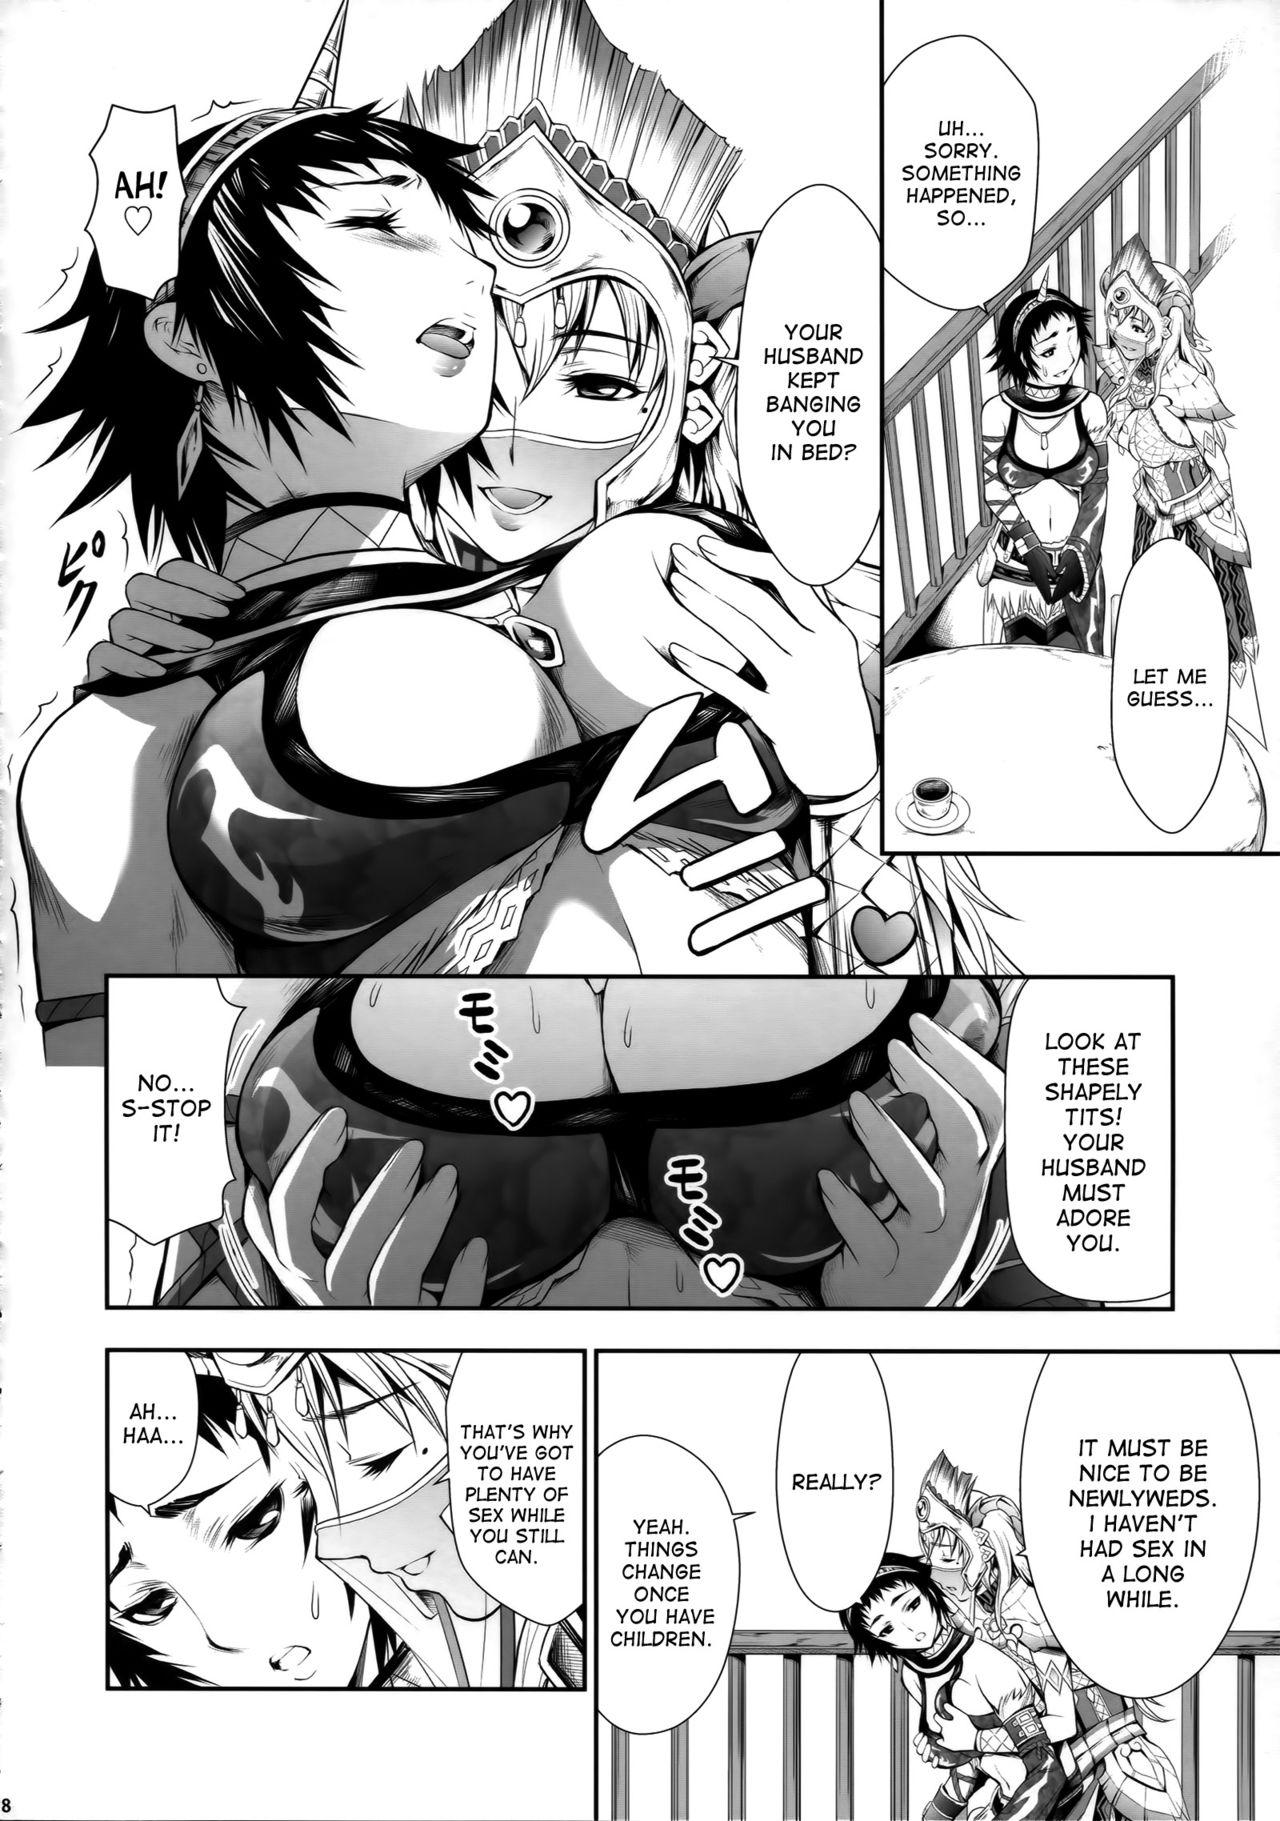 Spreading Pair Hunter no Seitai vol.2-1 - Monster hunter Tied - Page 8